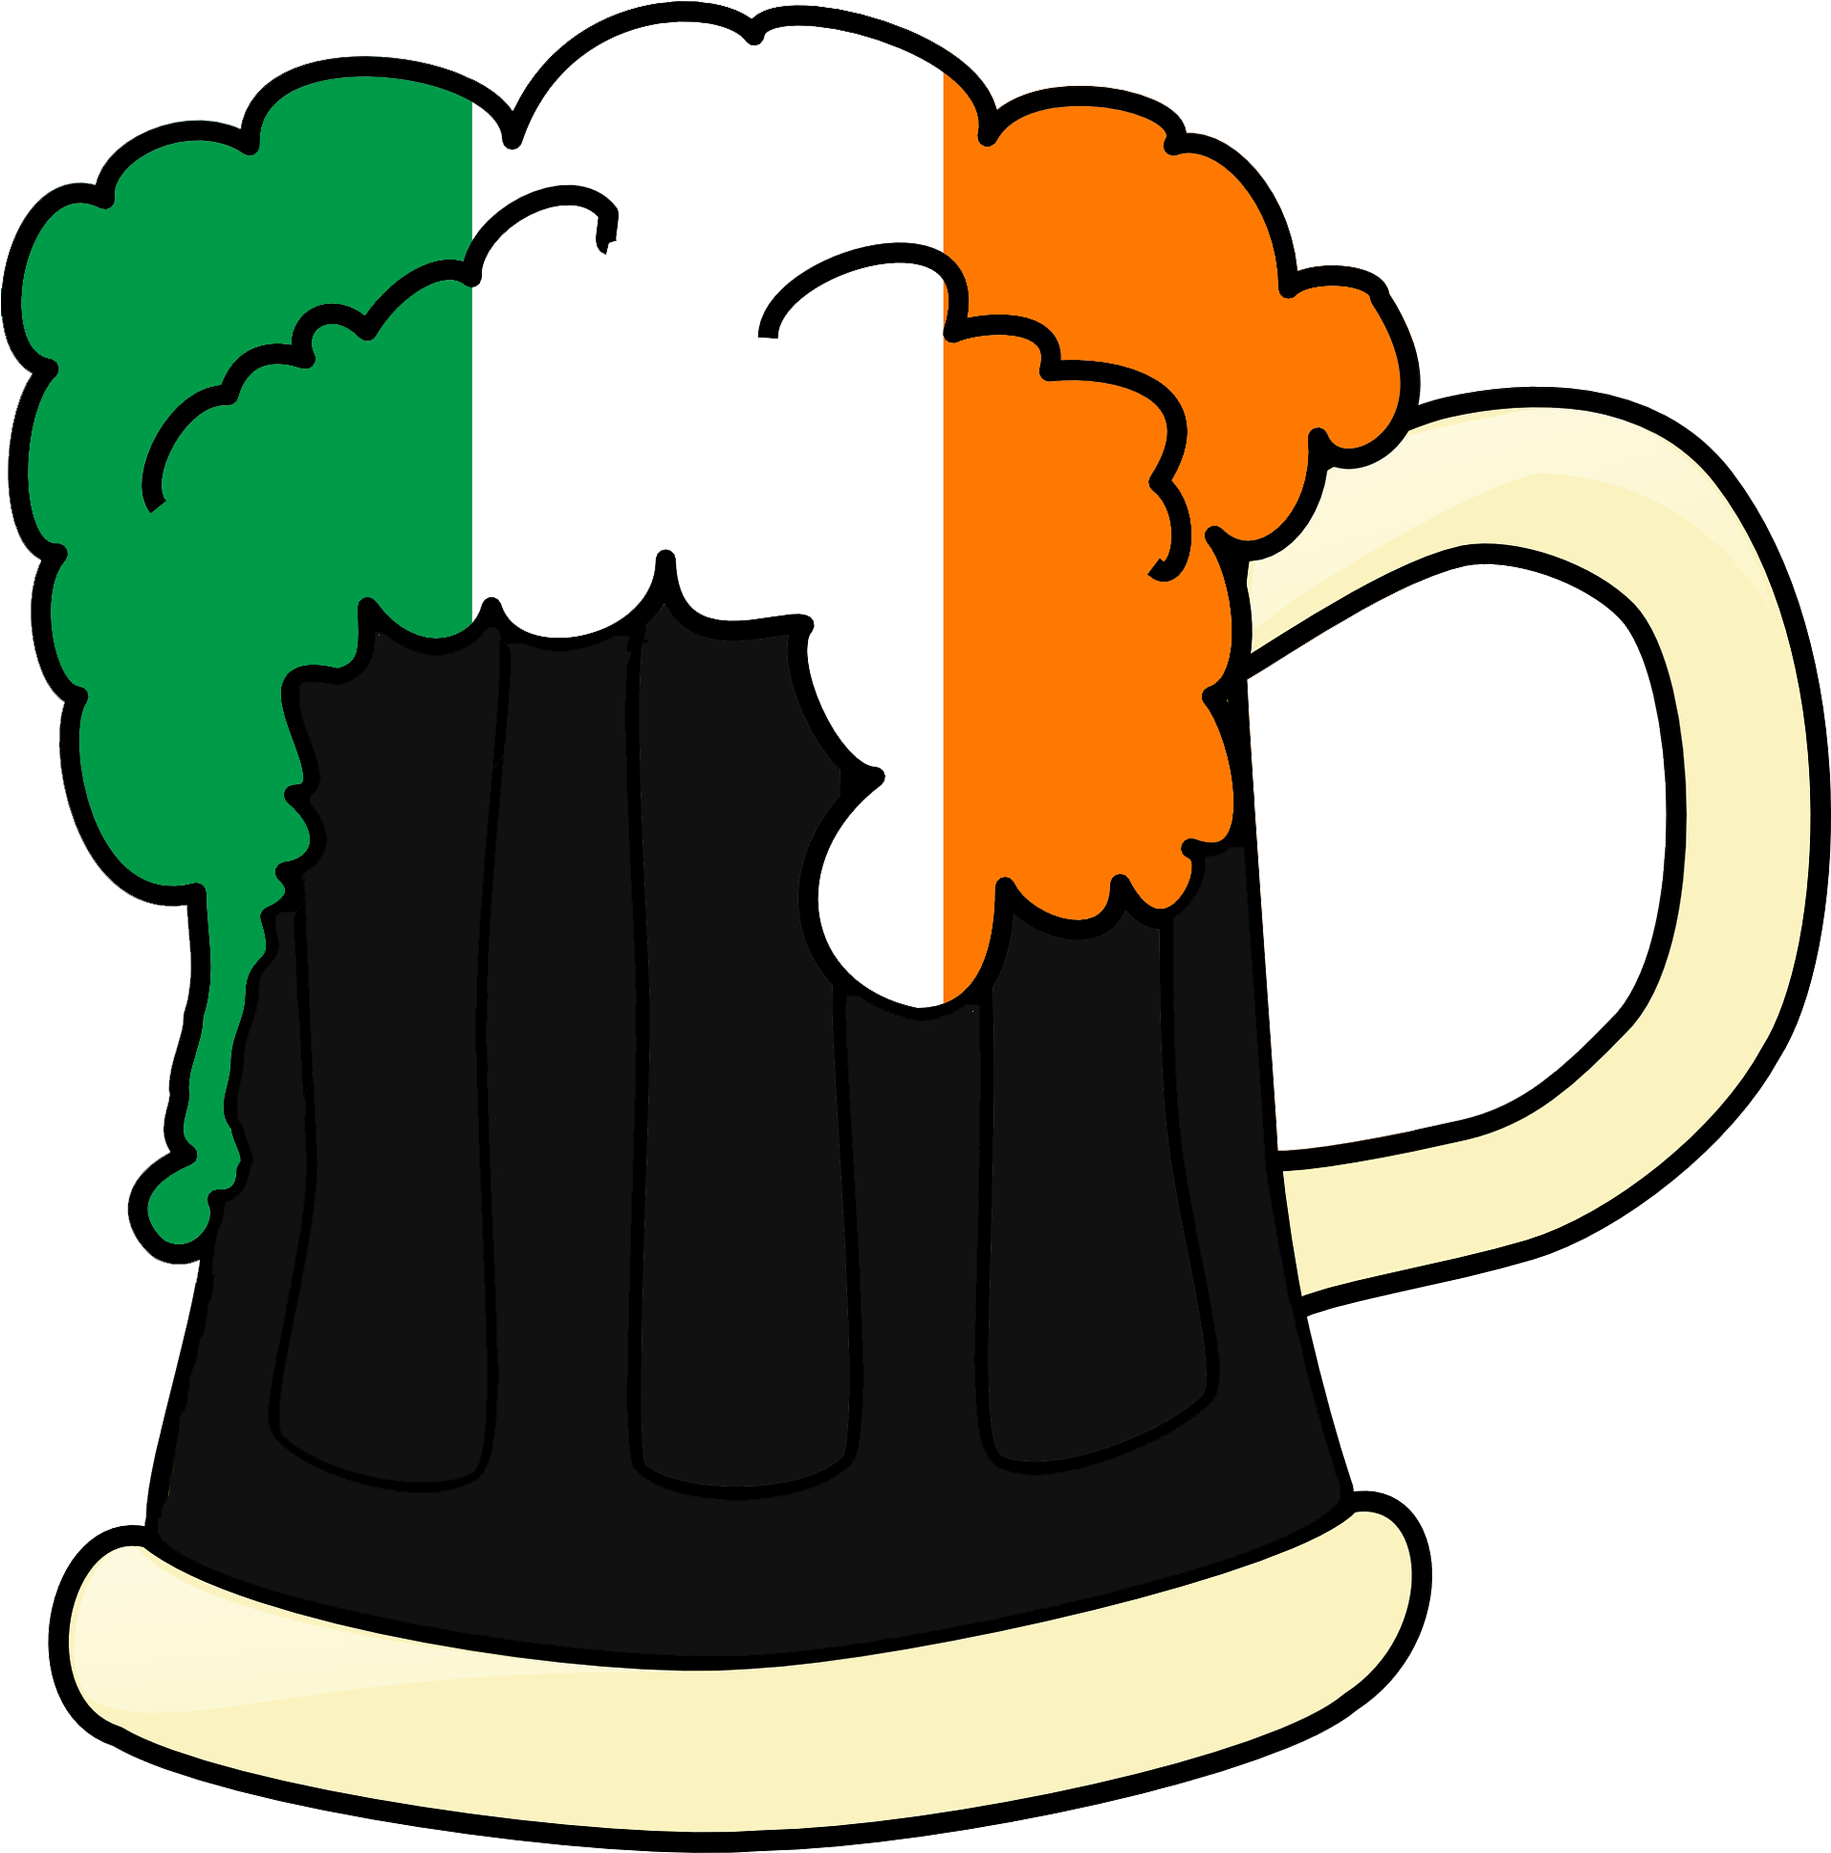 Ireland Beer Irish Green Saint 1312441 Transparent Beer